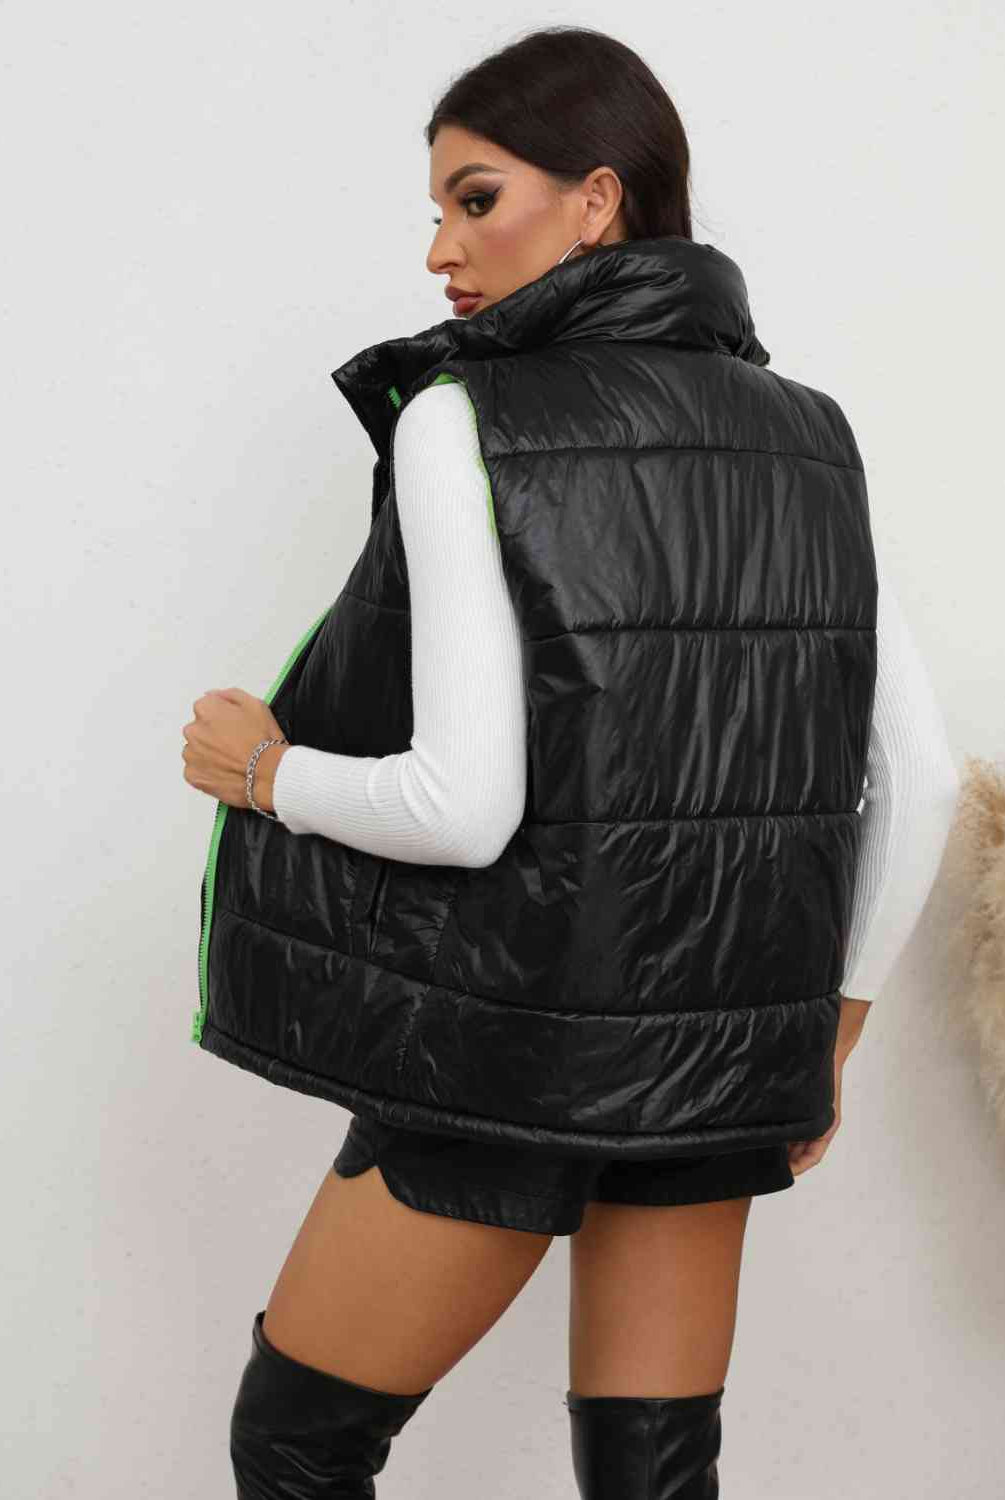 Black Zip-Up Collared Vest Winter Accessories